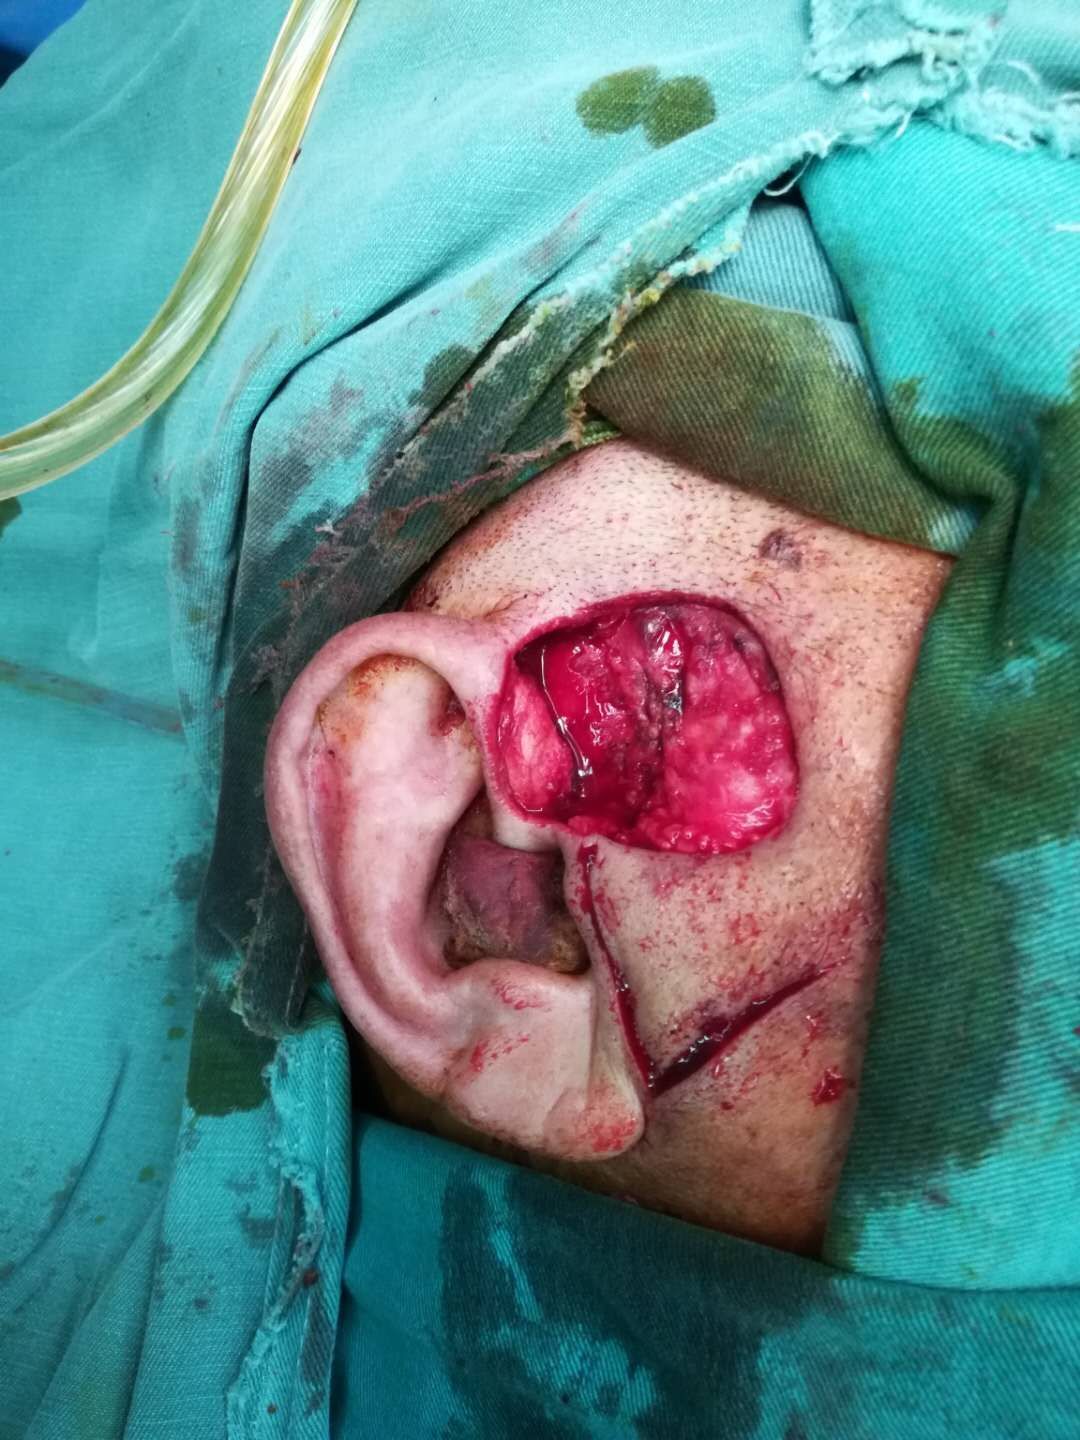 耳前肿物切除加局部皮瓣修复 